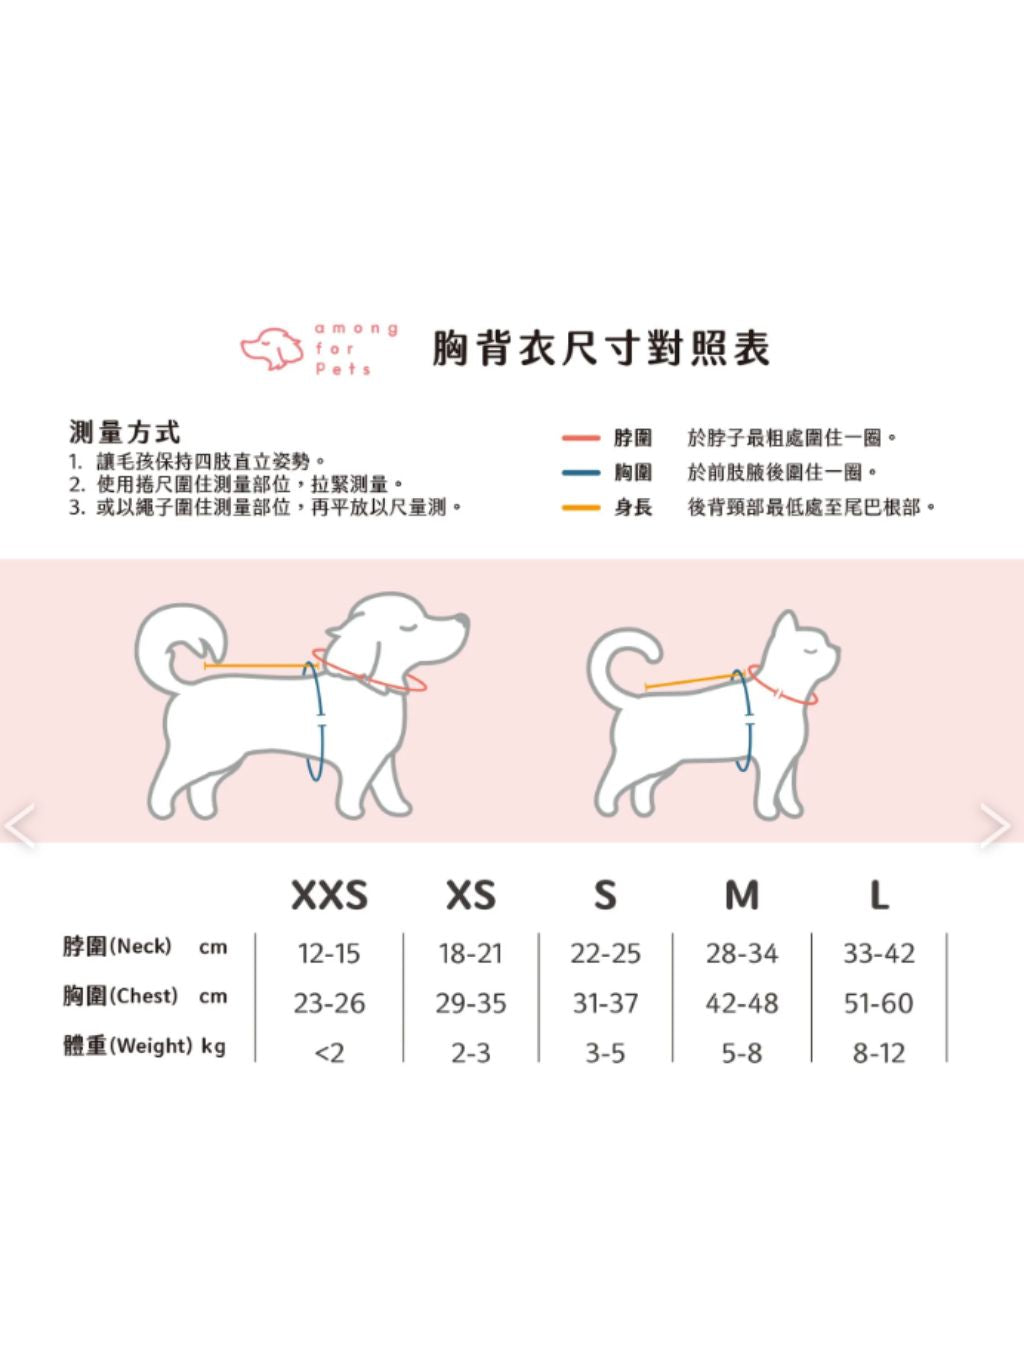 Among for pets | 英倫格仔襯衫 SH7 (預售)